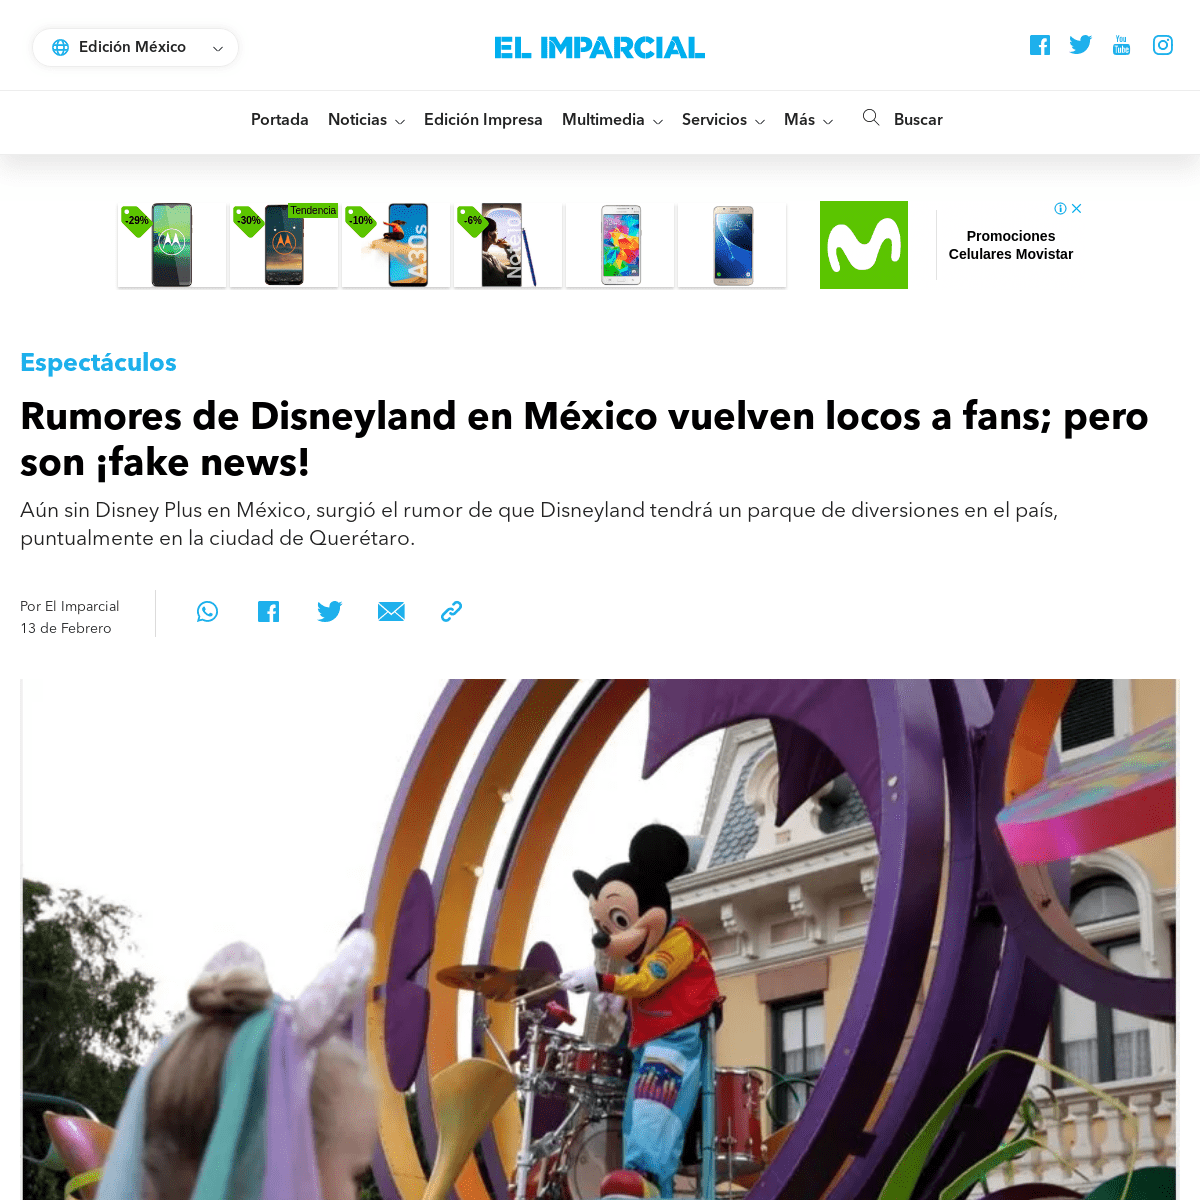 A complete backup of www.elimparcial.com/espectaculos/Rumores-de-Disneyland-en-Mexico-vuelven-locos-a-fans-pero-son-fakes-news-2